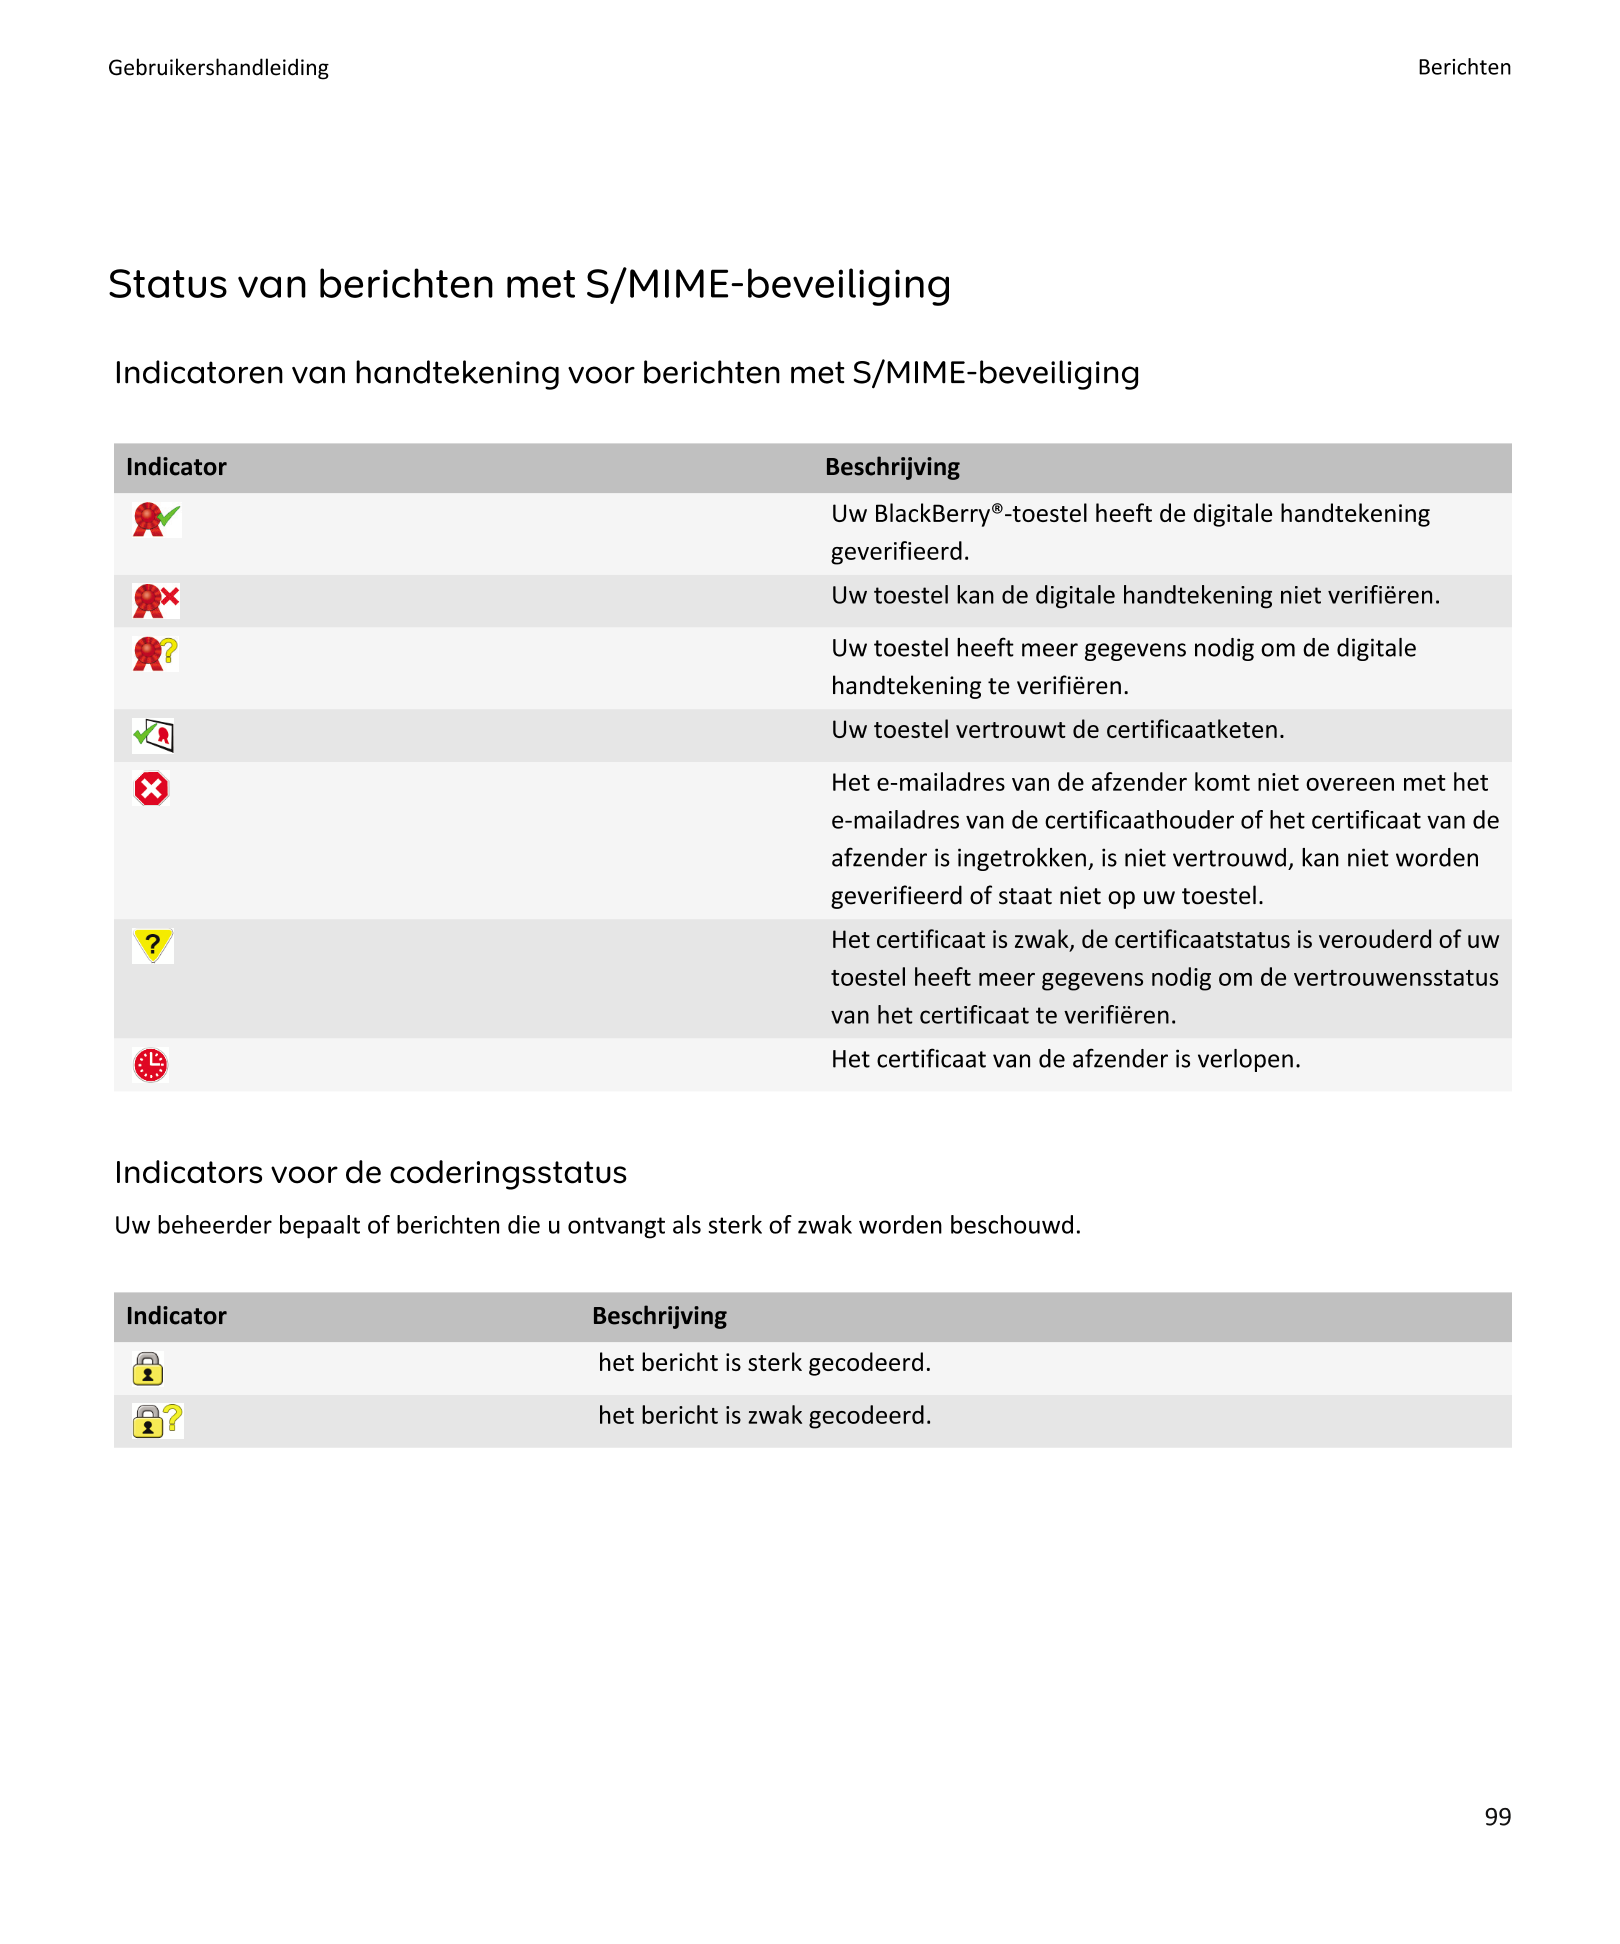 Gebruikershandleiding Berichten
Status van berichten met S/MIME-beveiliging
Indicatoren van handtekening voor berichten met S/MI